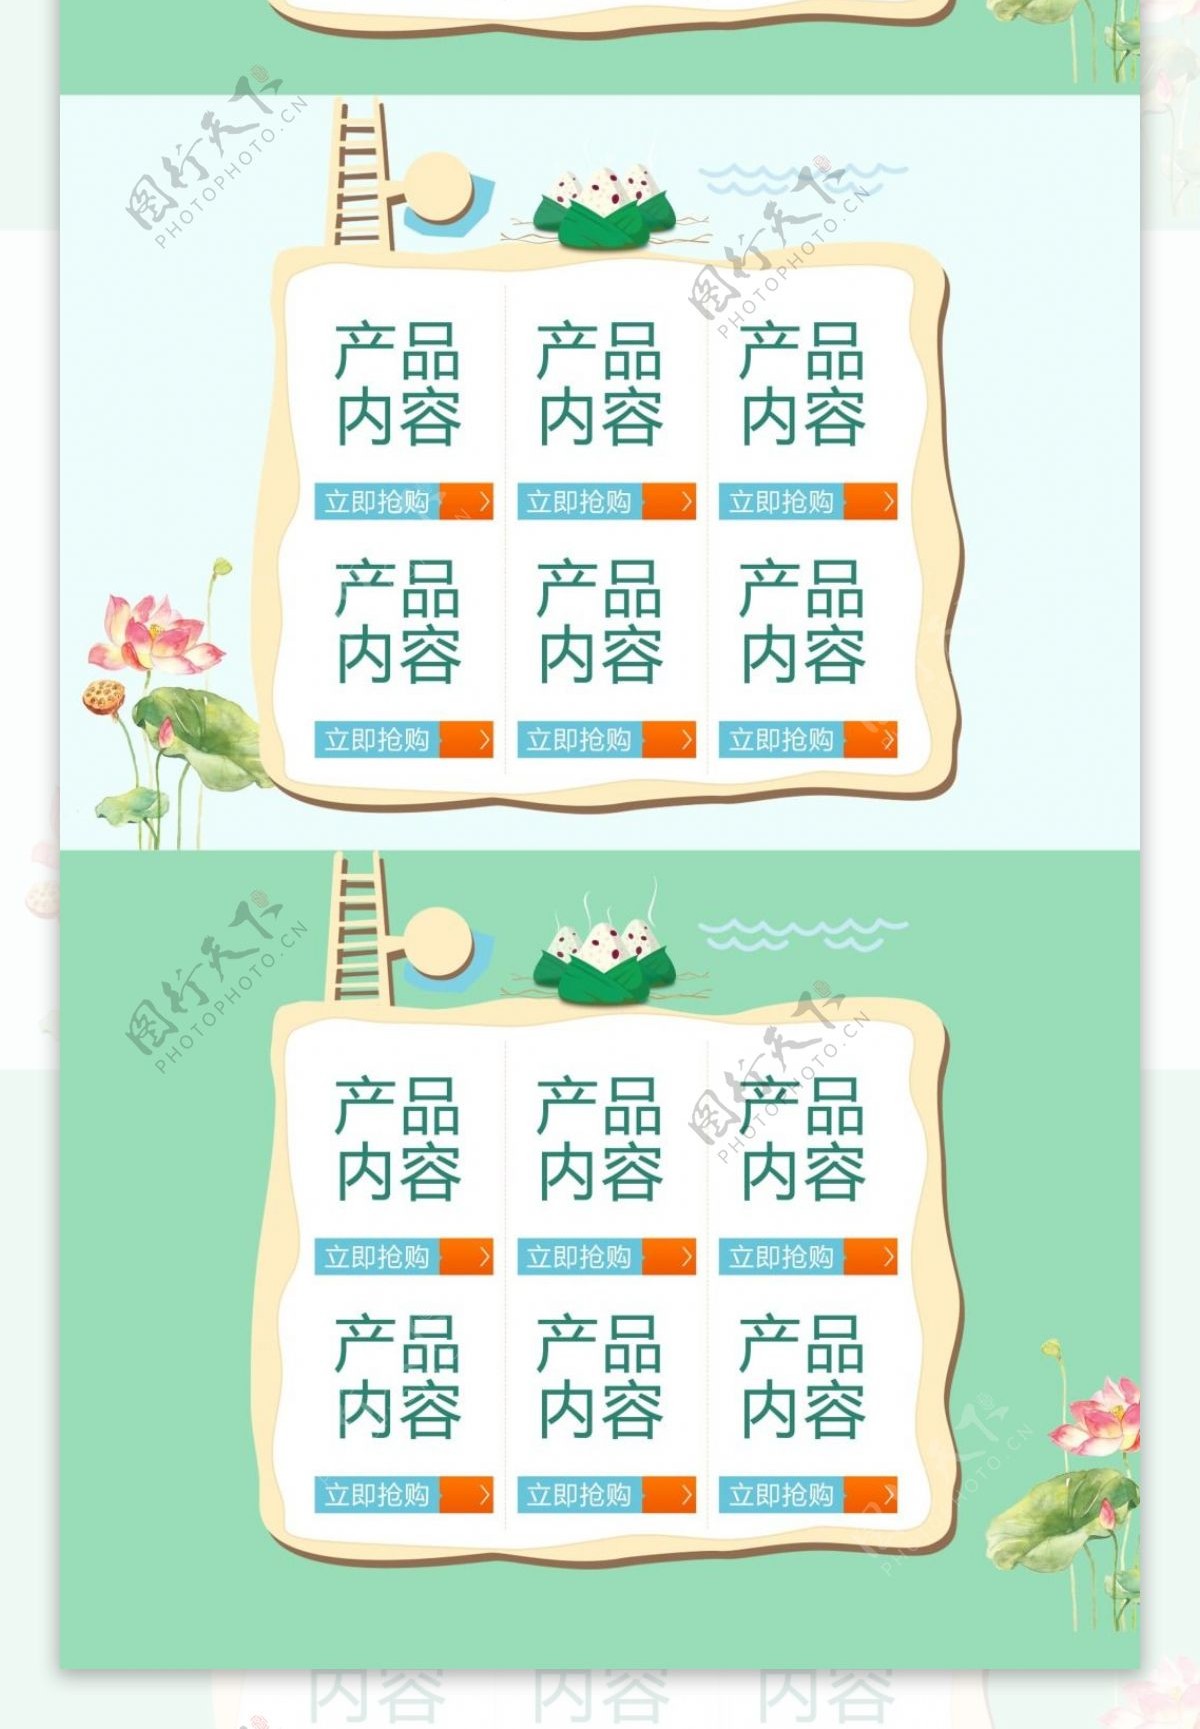 粽子节端午节淘宝天猫首页节日模板海报设计